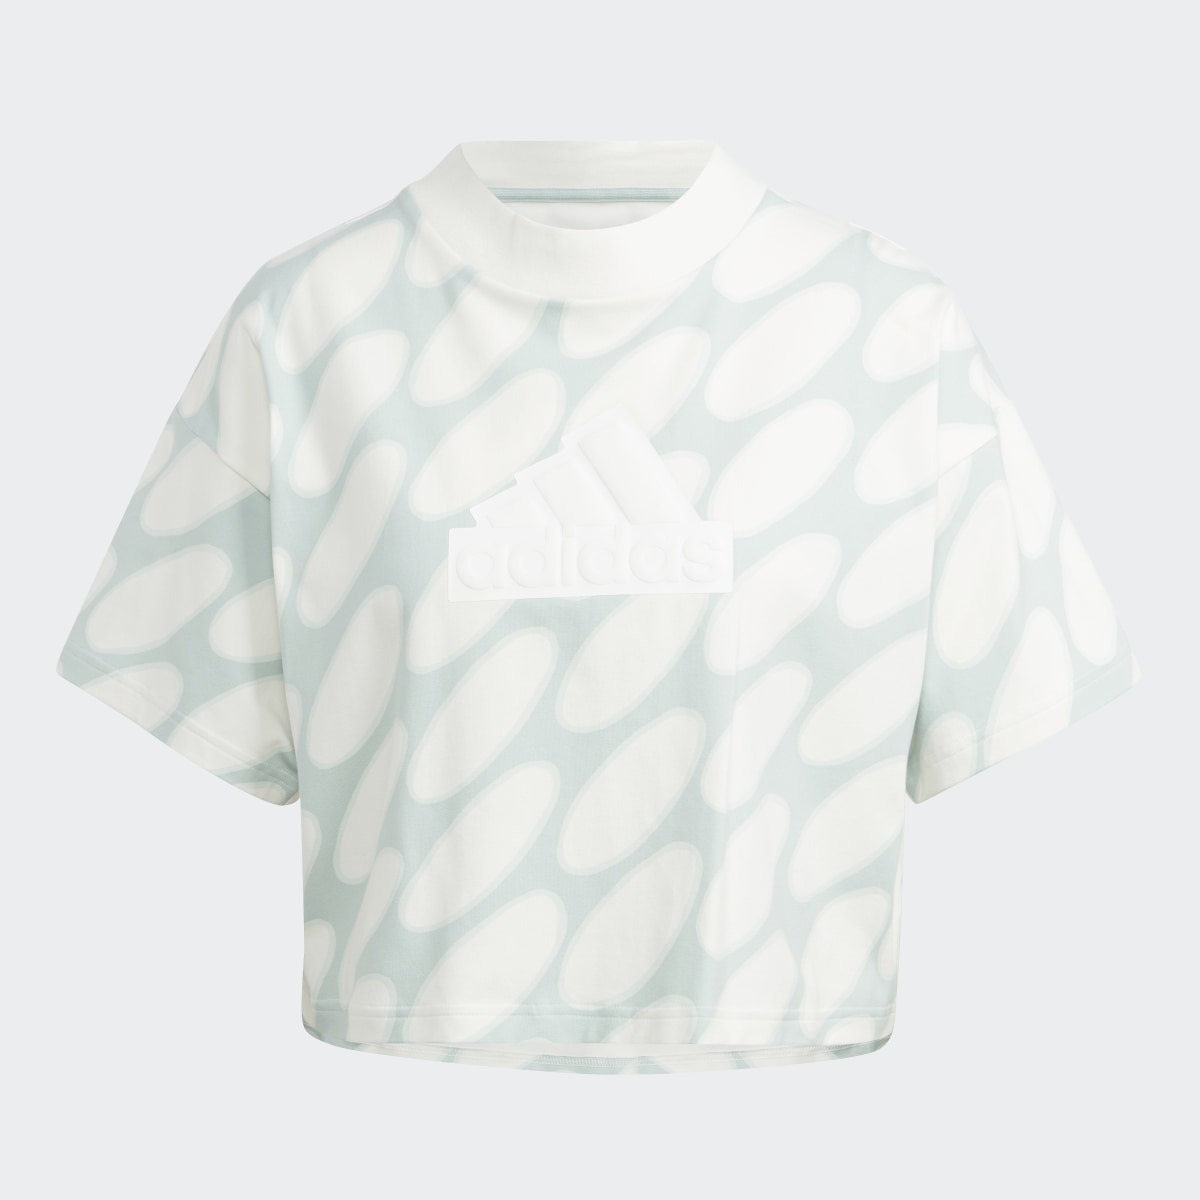 Adidas Marimekko Future Icons 3-Streifen T-Shirt. 5